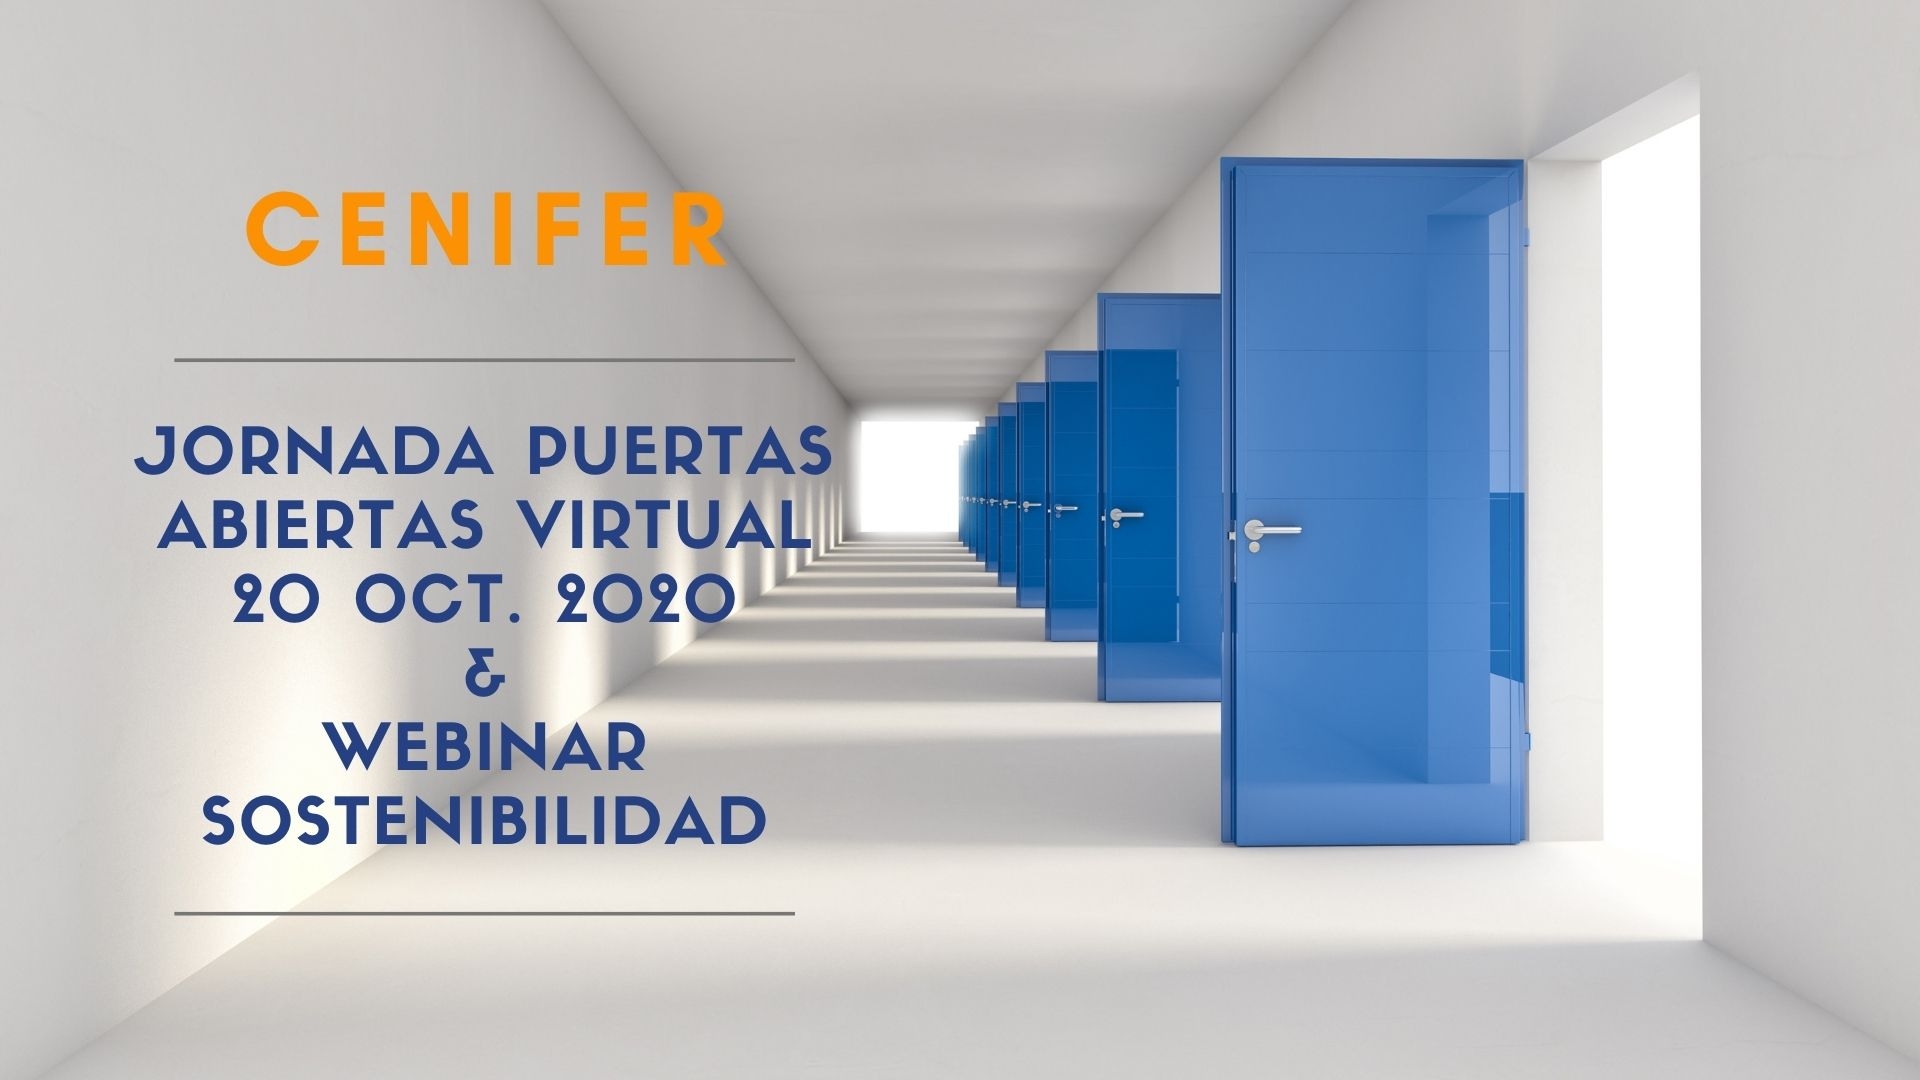 Cenifer-Próxima Jornada virtual de puertas abiertas de CENIFER y Webinar de sostenibilidad 20oct2020-17